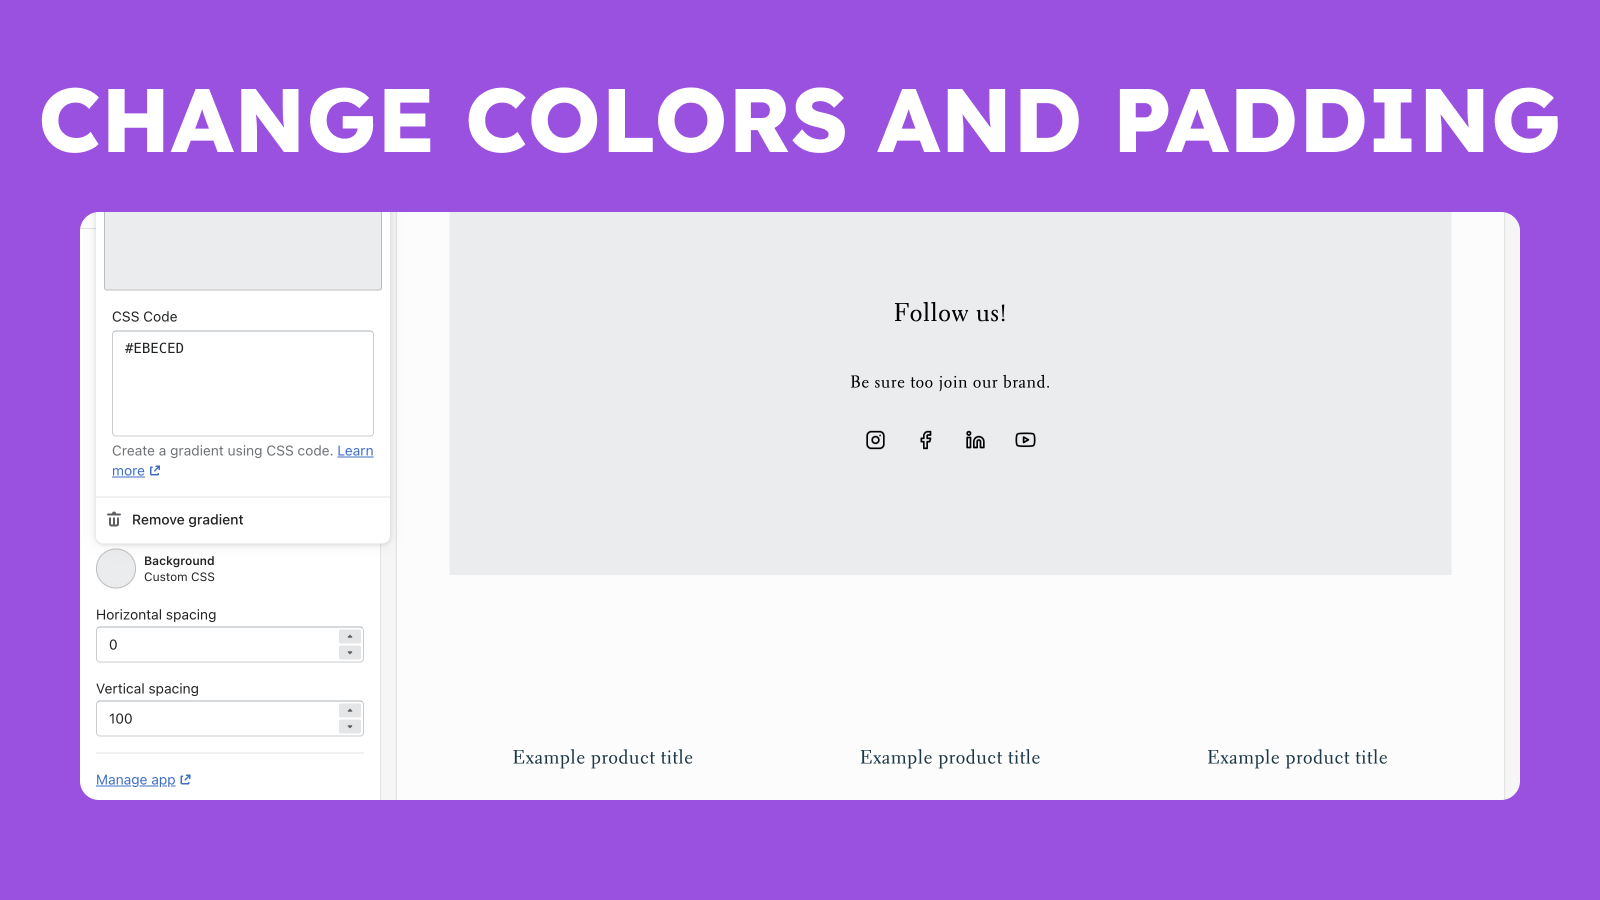 Floox Social Networks Easy应用 - 颜色和填充管理